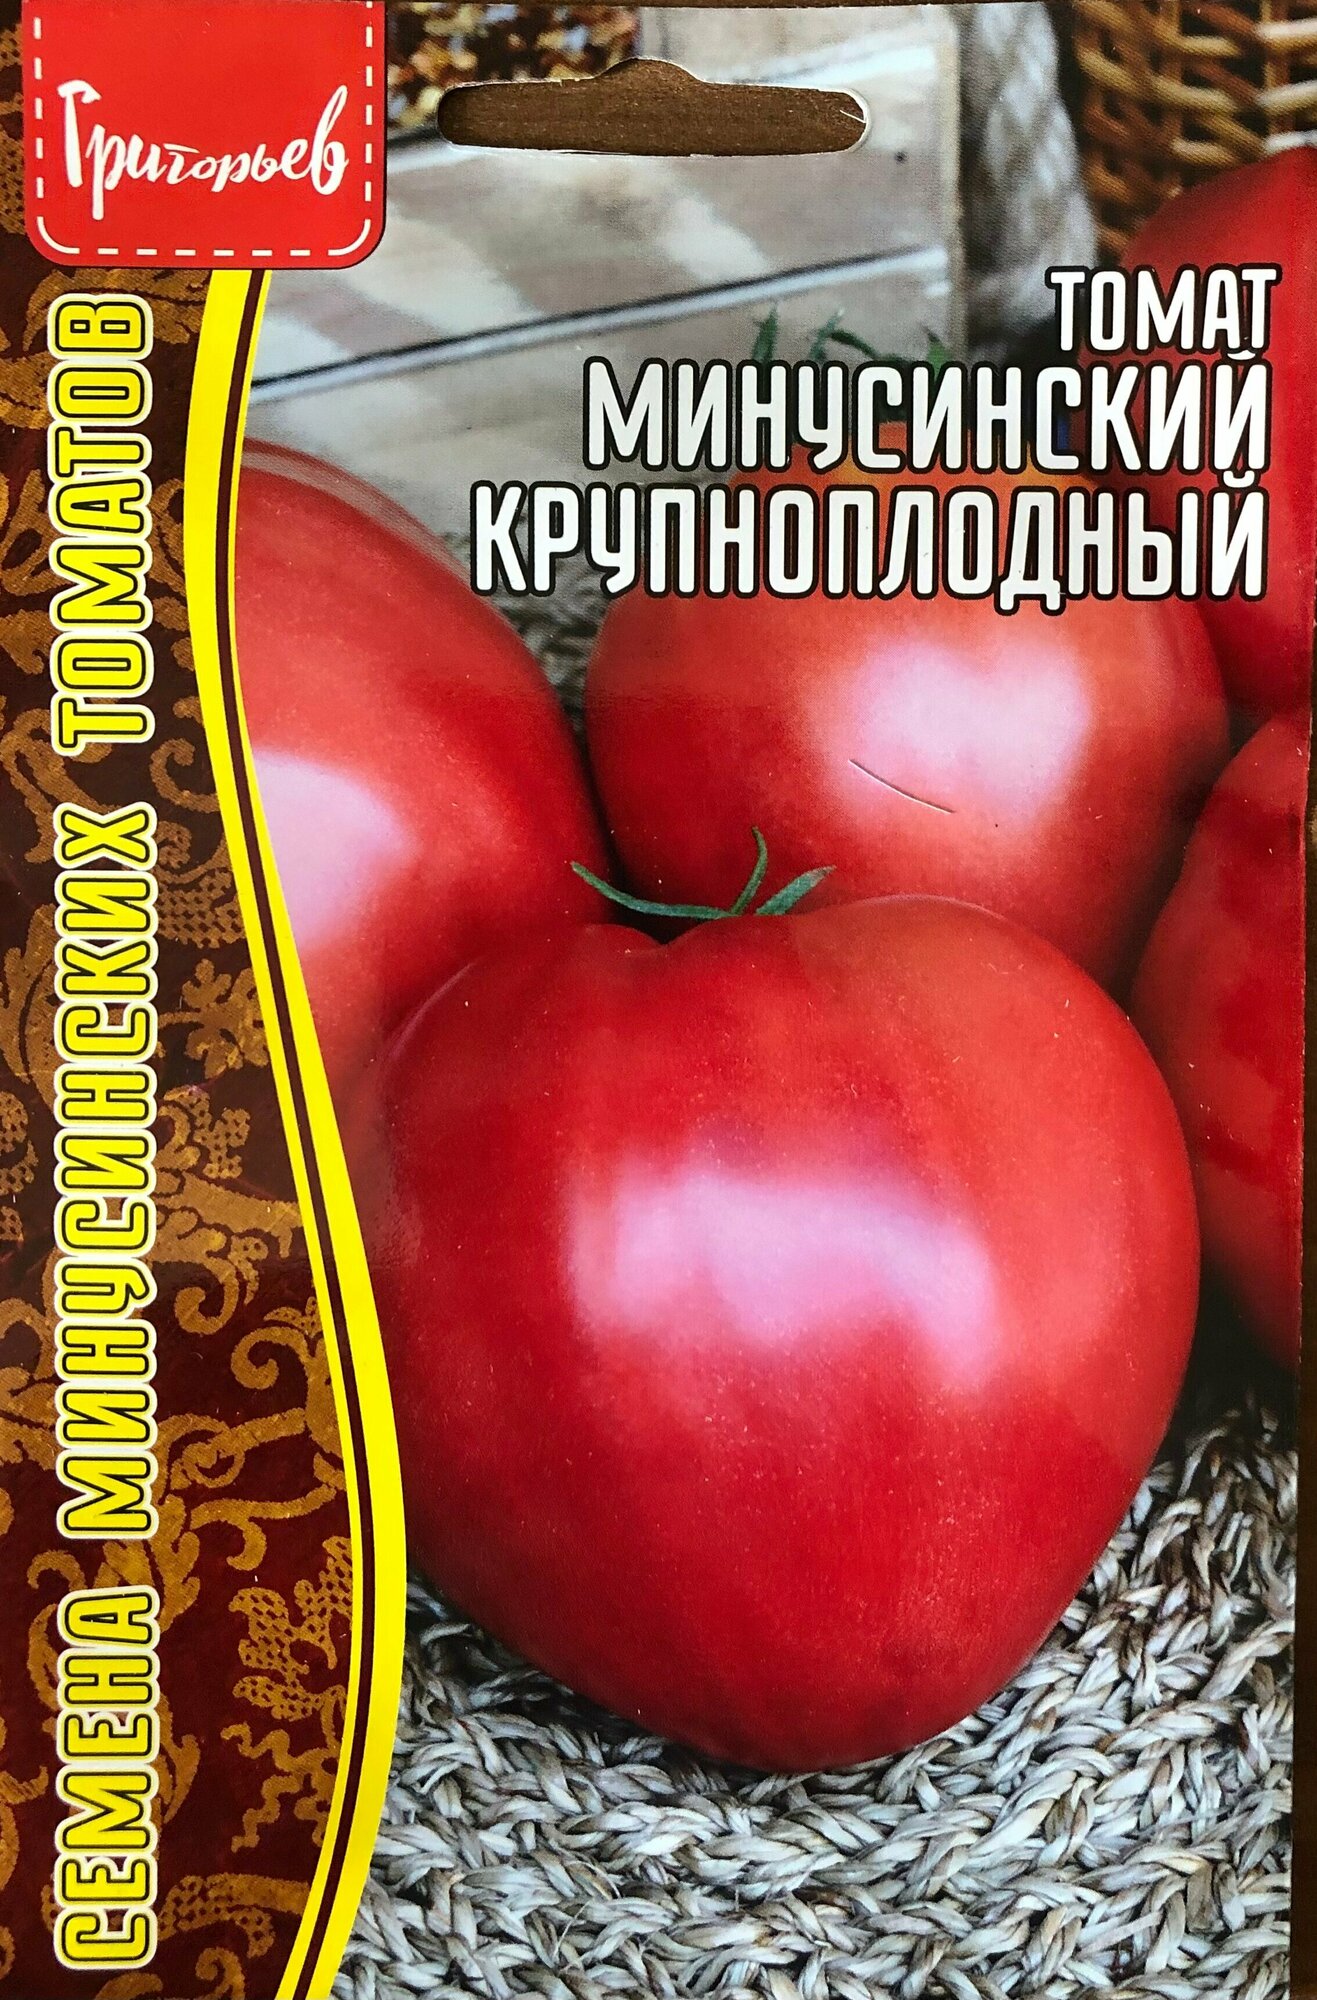 Семена Томата стрессоустойчивого "Минусинский крупноплодный" (10 семян)